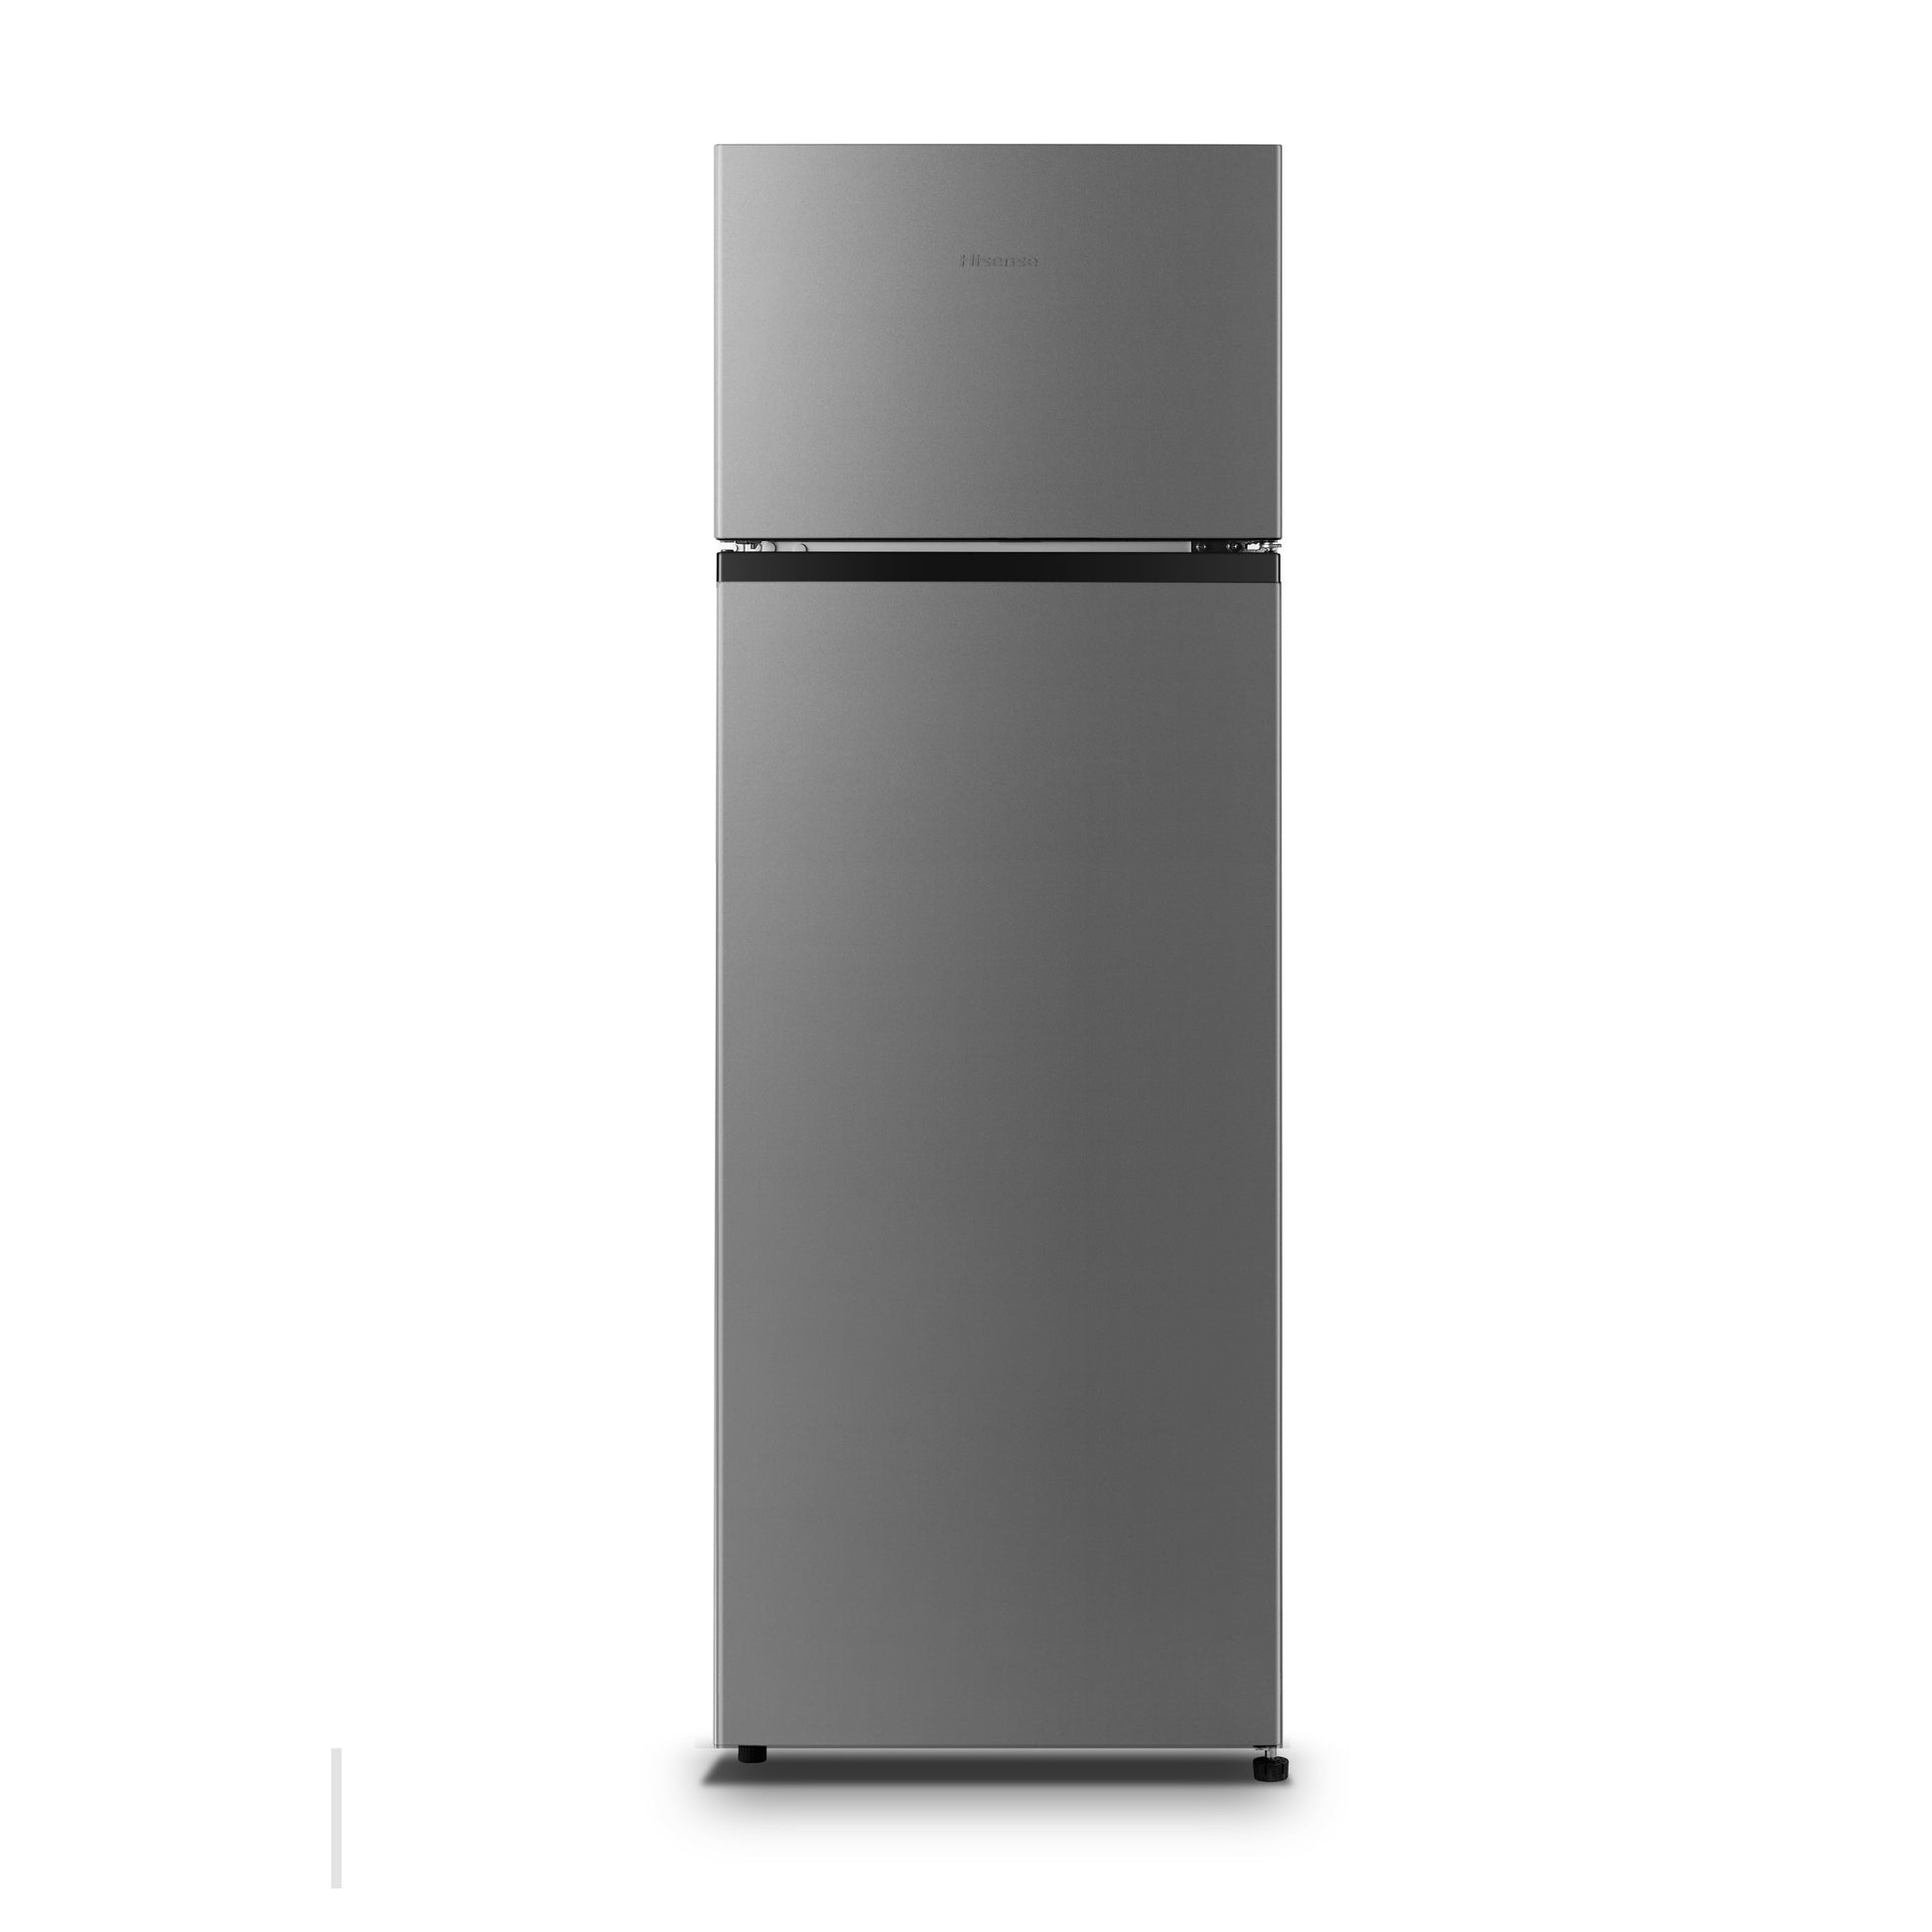 Hisense REF240DR 240L Double Door Top-Freezer Refrigerator + Defrost (Front View) - Brand New